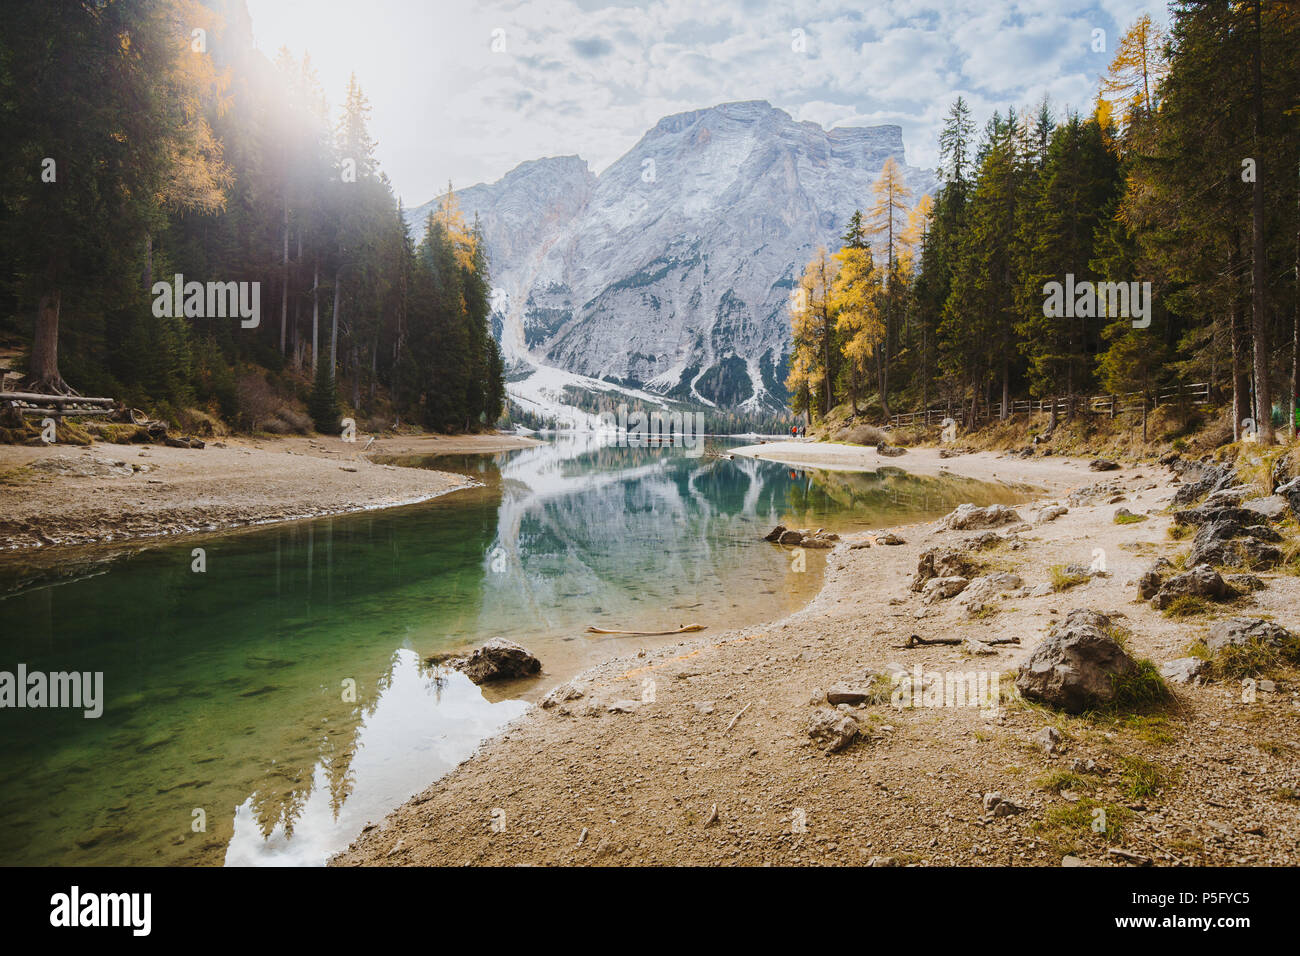 Einen malerischen Blick auf die herrliche Berglandschaft an der berühmten Lago di Braies mit Dolomiten Bergspitzen in ruhigem Wasser reflektiert, Südtirol, Italien Stockfoto